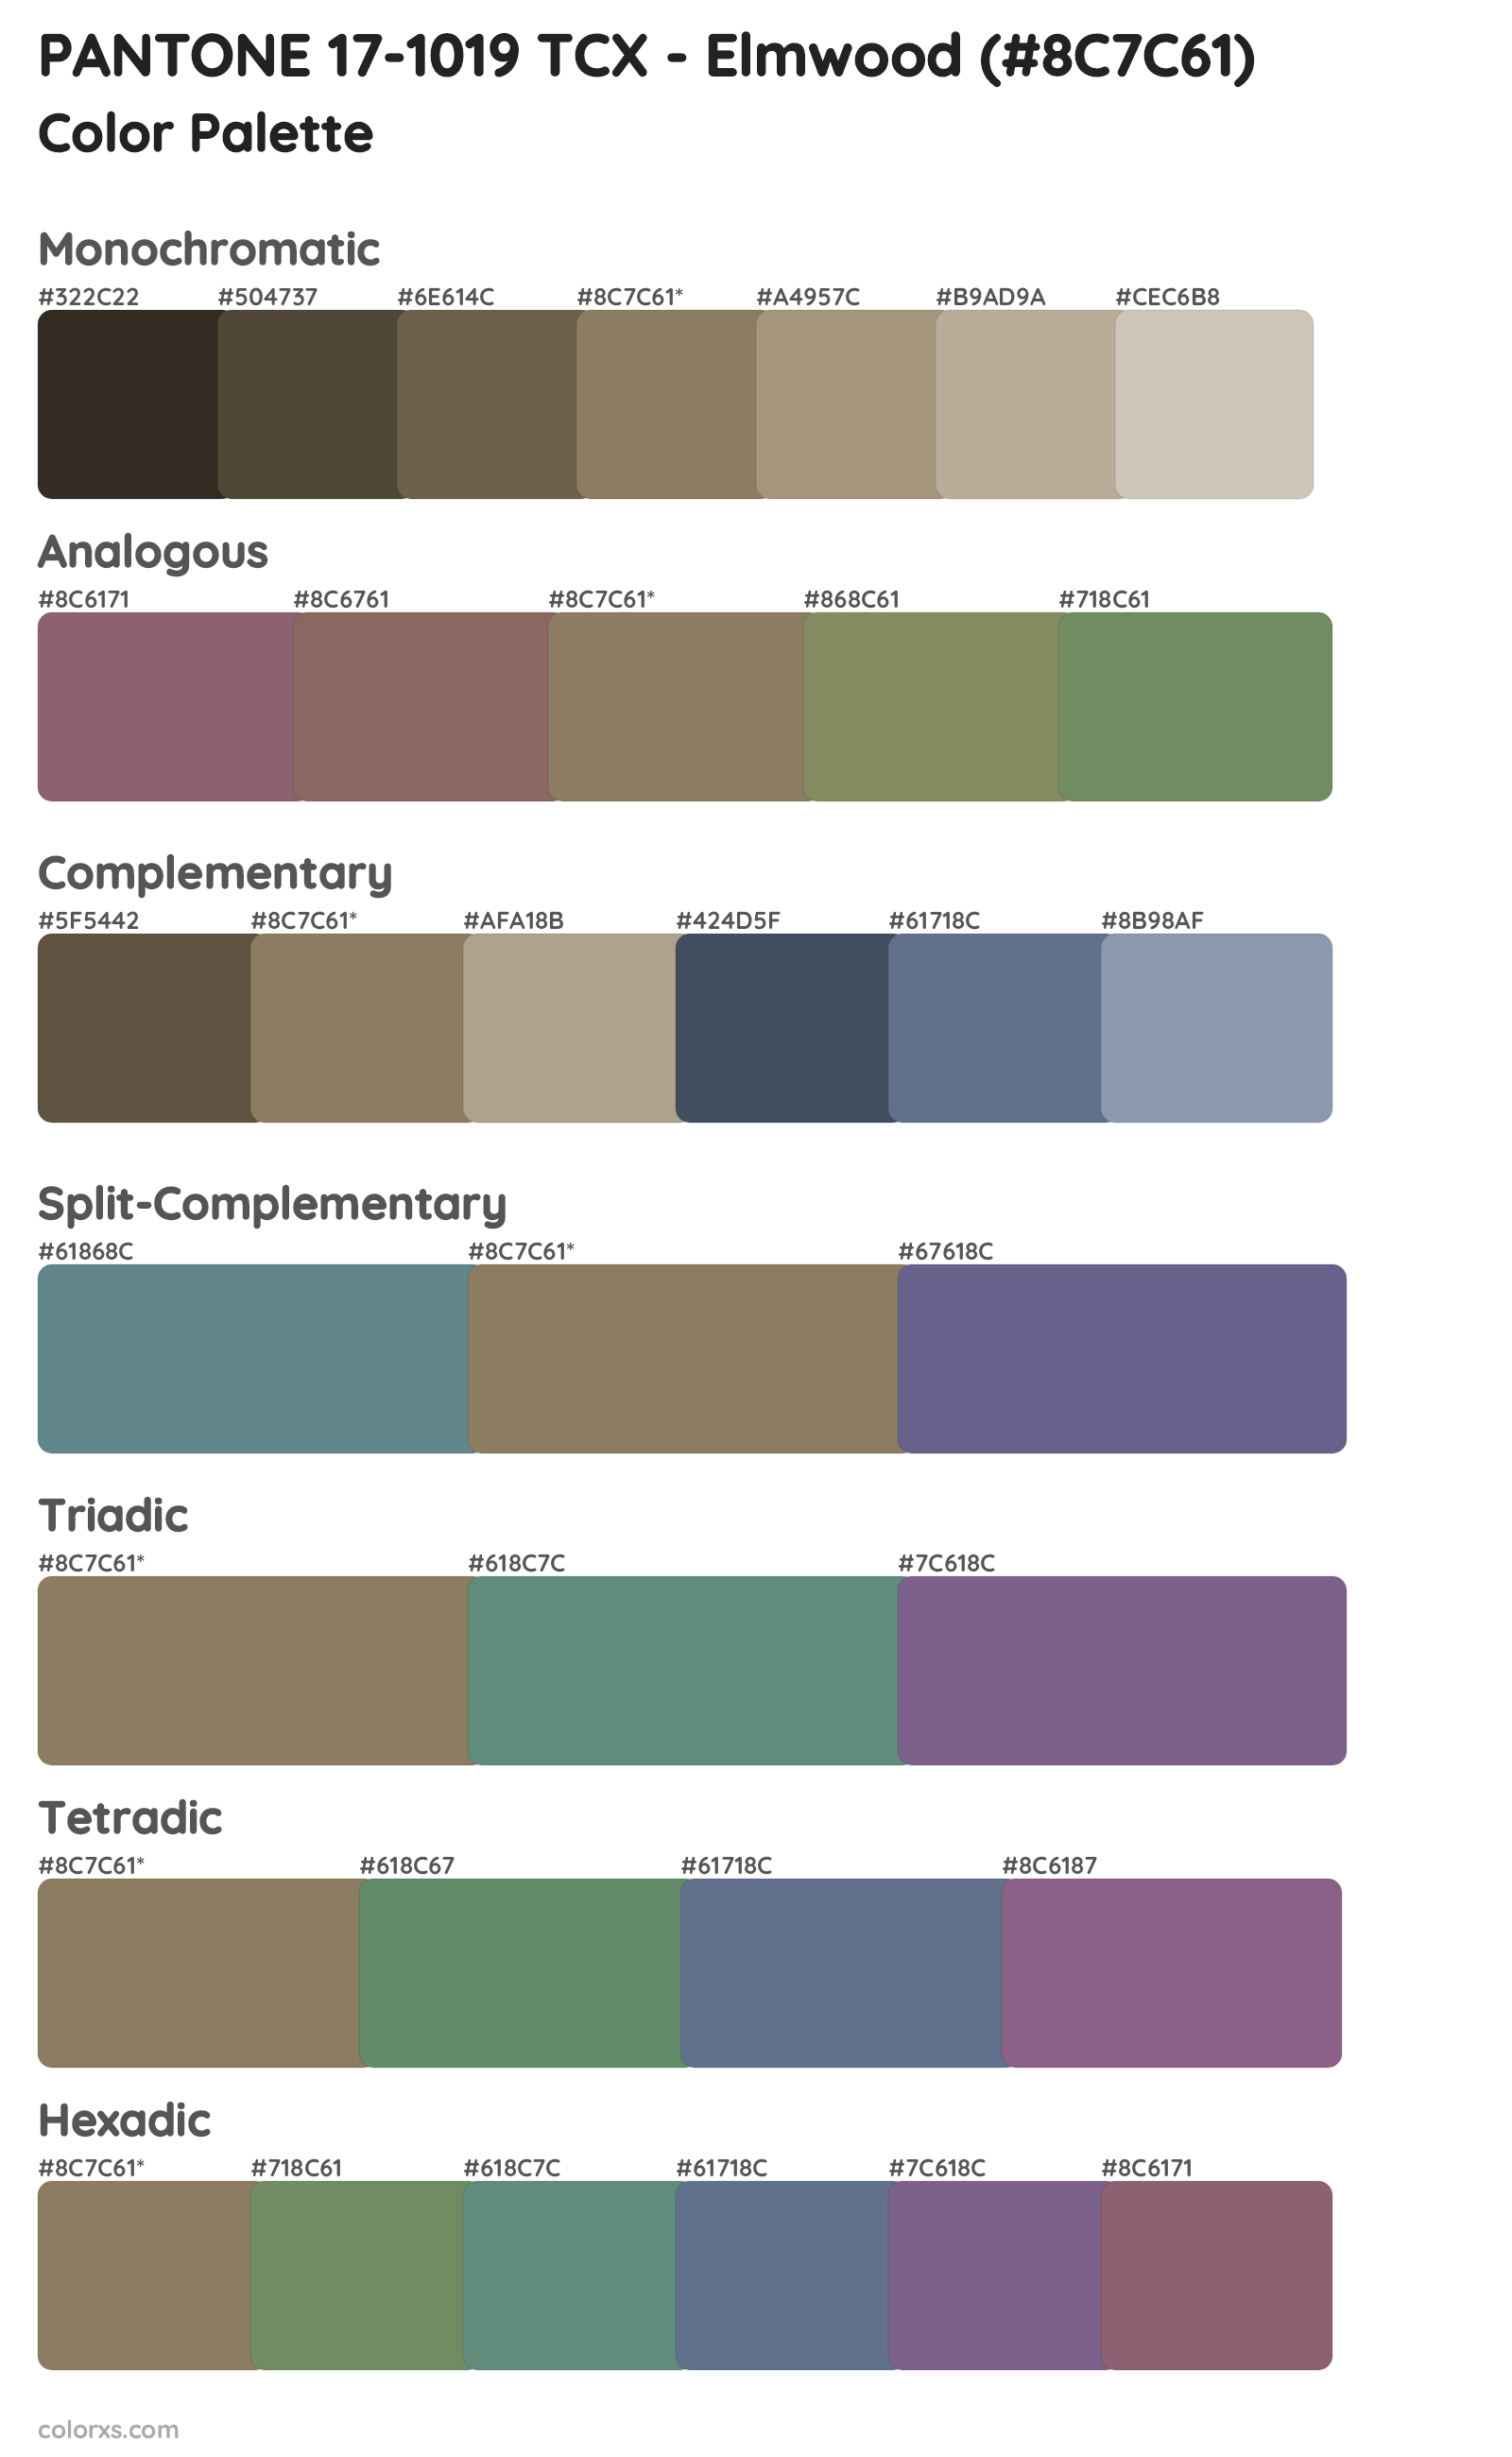 PANTONE 17-1019 TCX - Elmwood Color Scheme Palettes